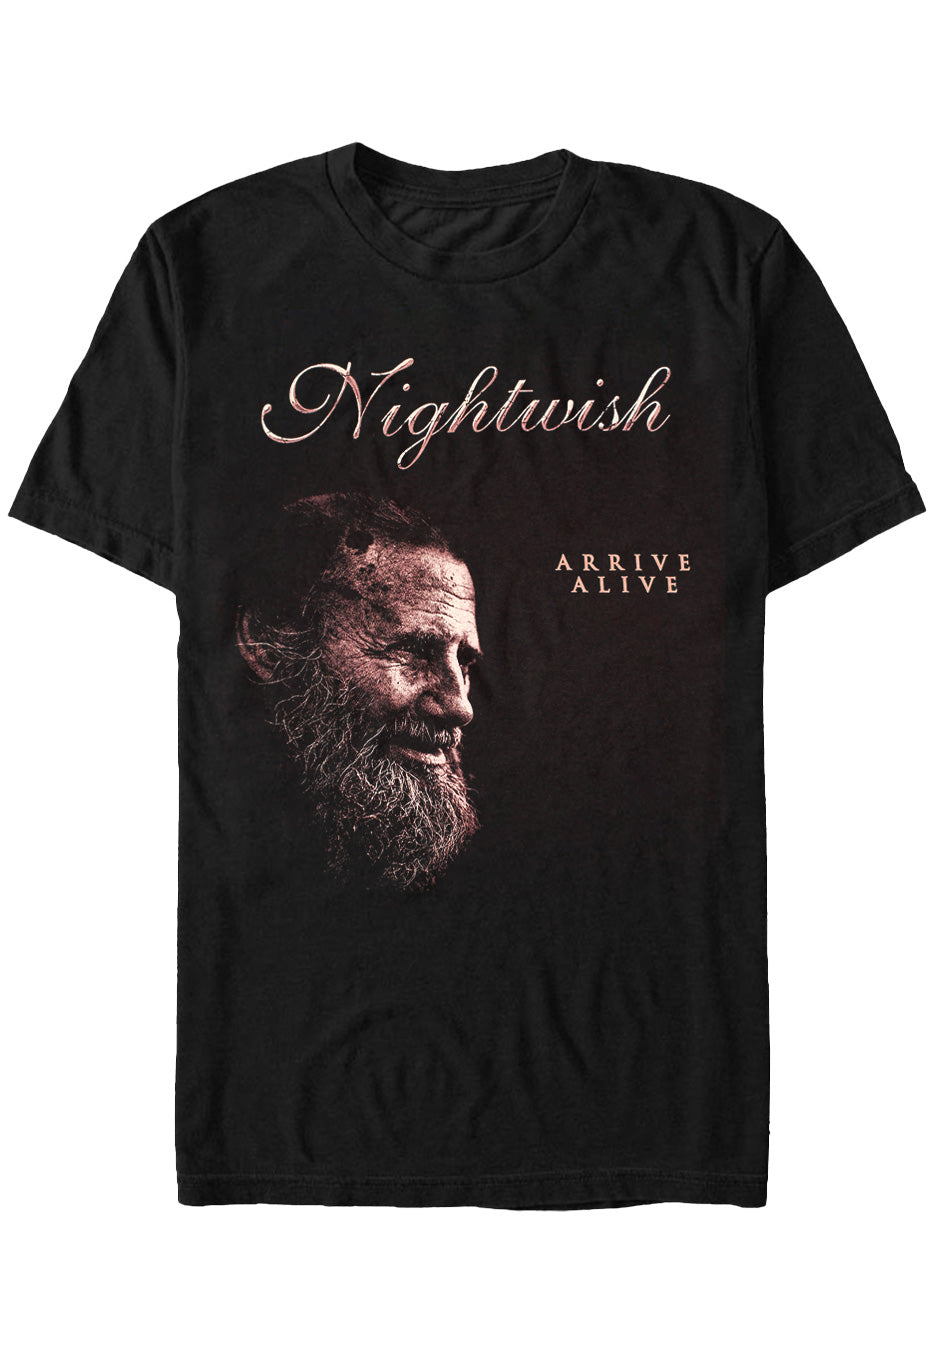 Nightwish - Shoemaker - T-Shirt